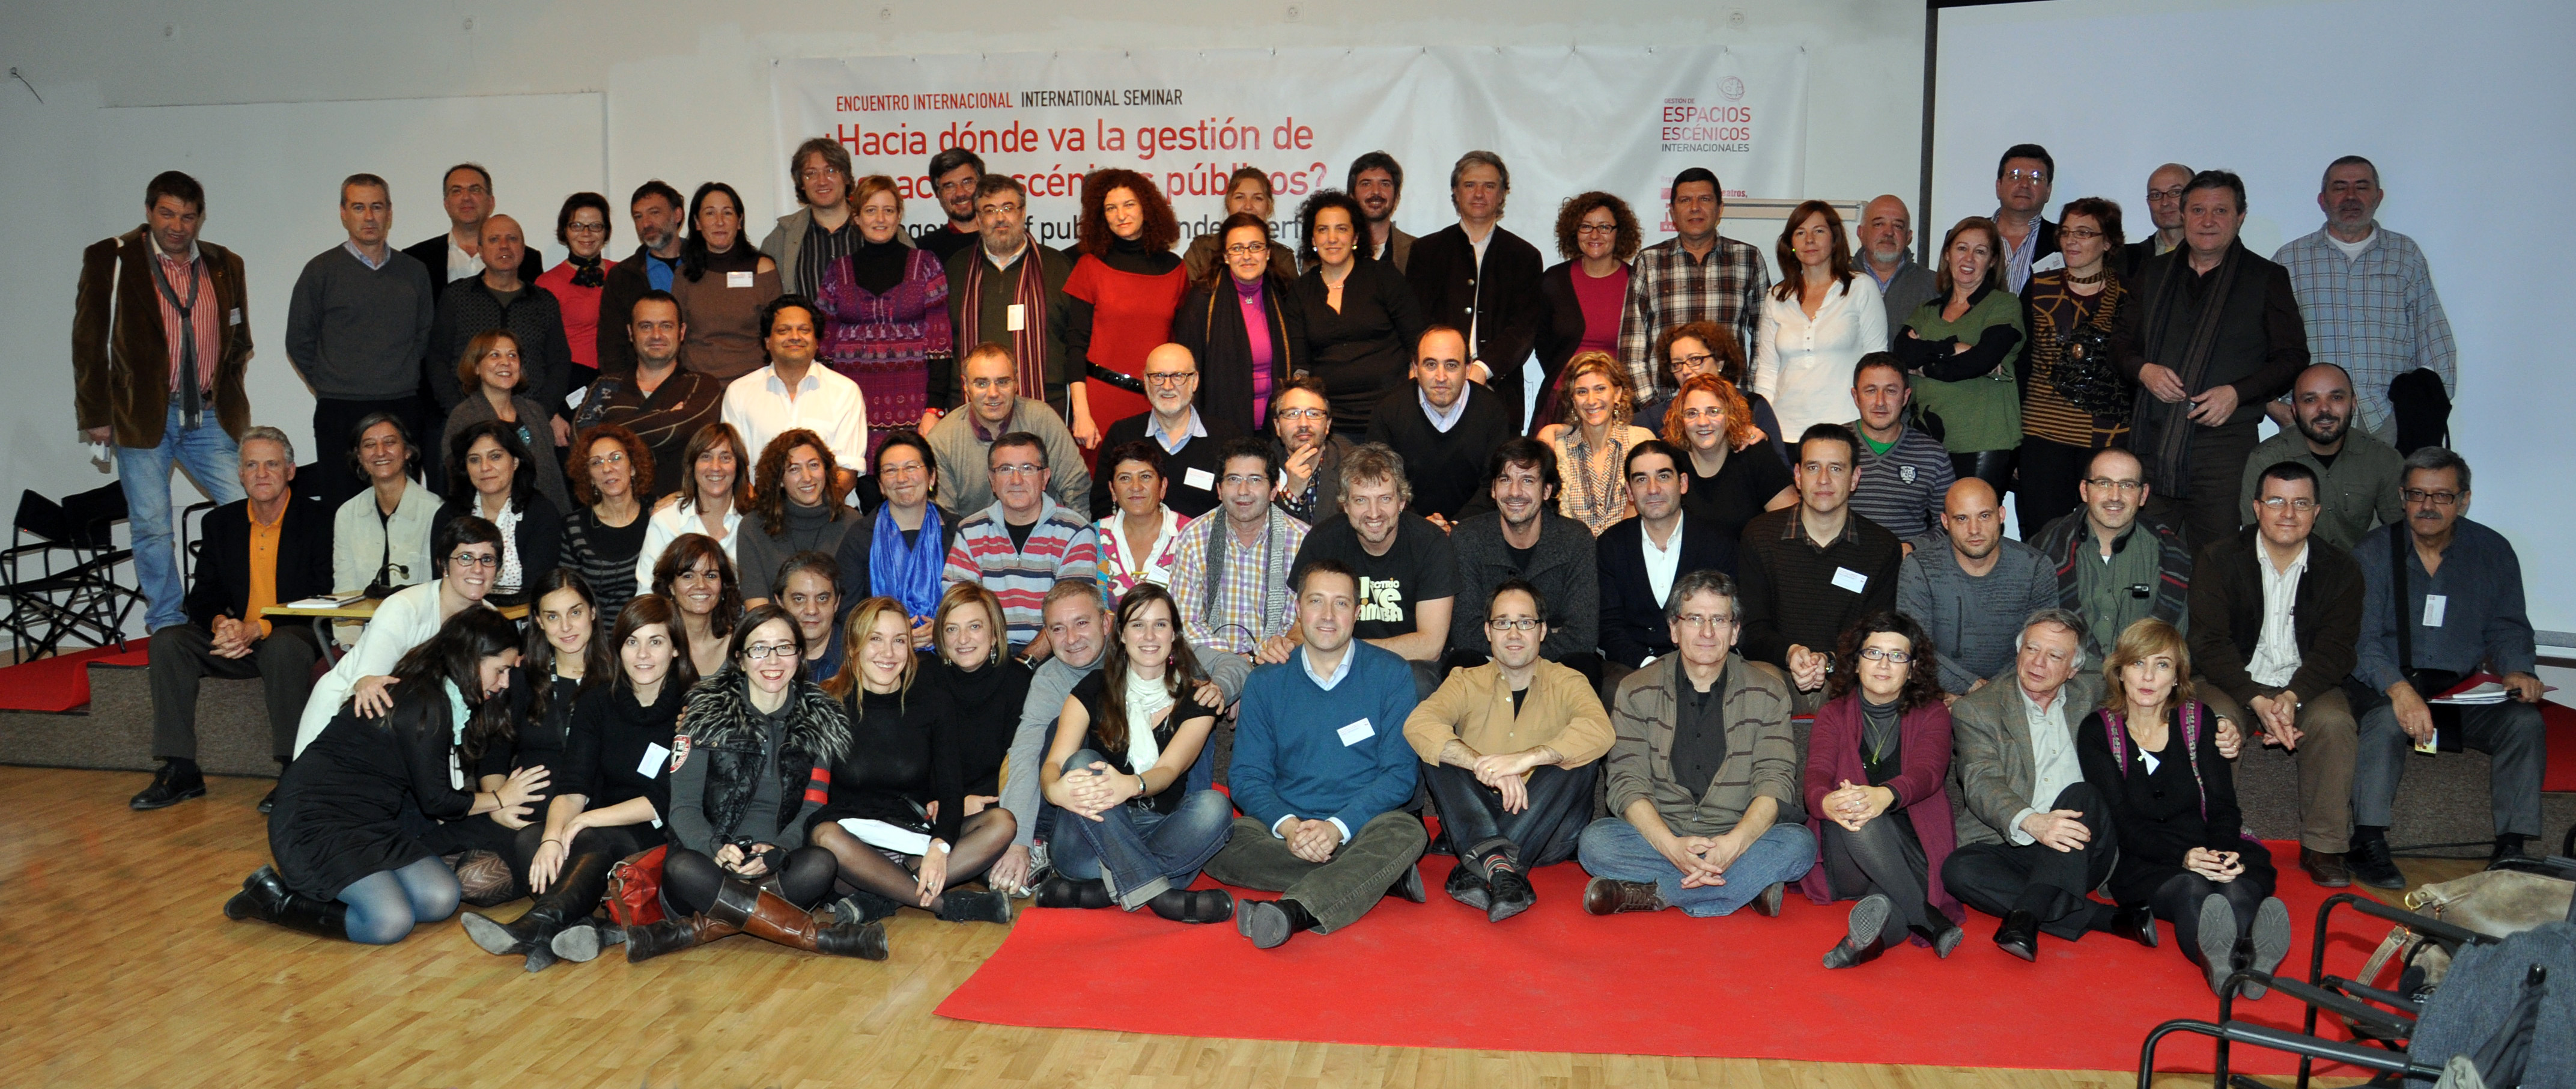 Encuentro internacional Red de Teatros. Madrid.